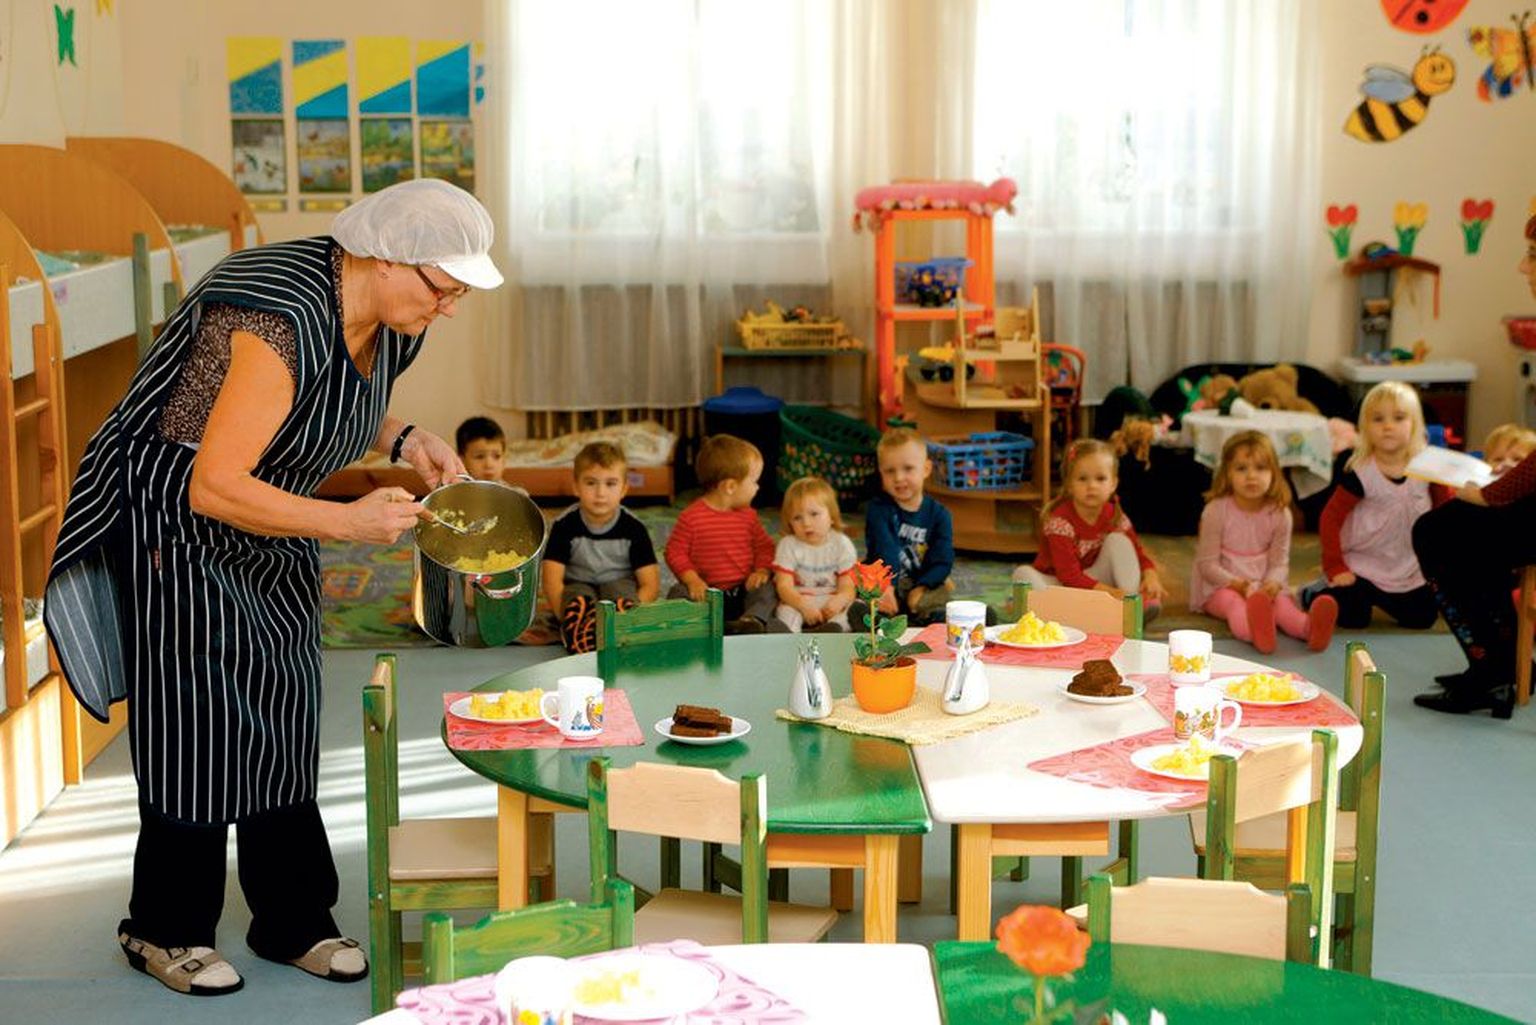 Sireli lasteaia Liblika rühmas tõstis reedel lastele lõunasööki lauale kokatädi Maria Kuznetsova. Kuna hinnad on tõusnud, läheb ka Sirelis uuest aastast söömine kulukamaks. Alates 1. jaanuarist 2012 maksab söögipäev 1,35 eurot.